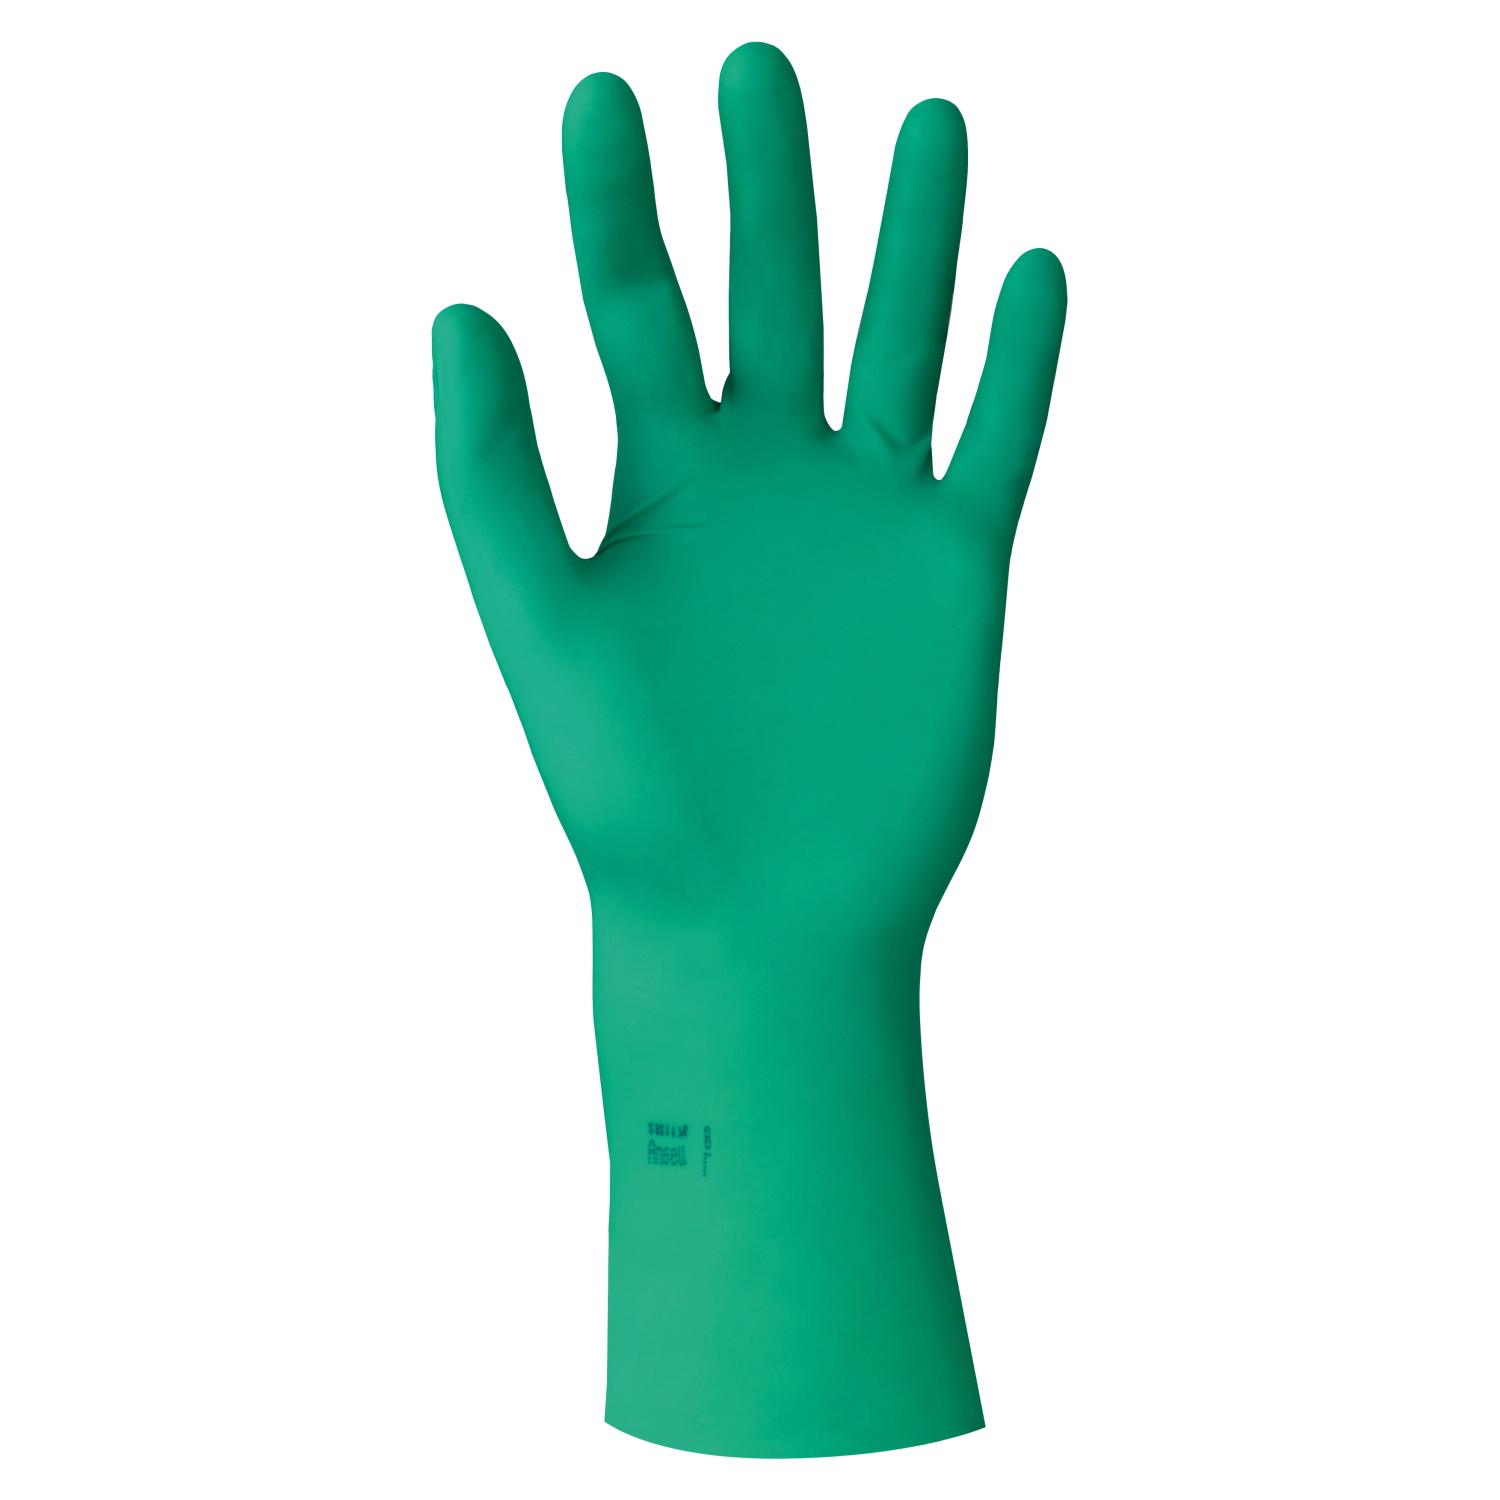 Polychloropren-Handschuh DermaShield 73-711